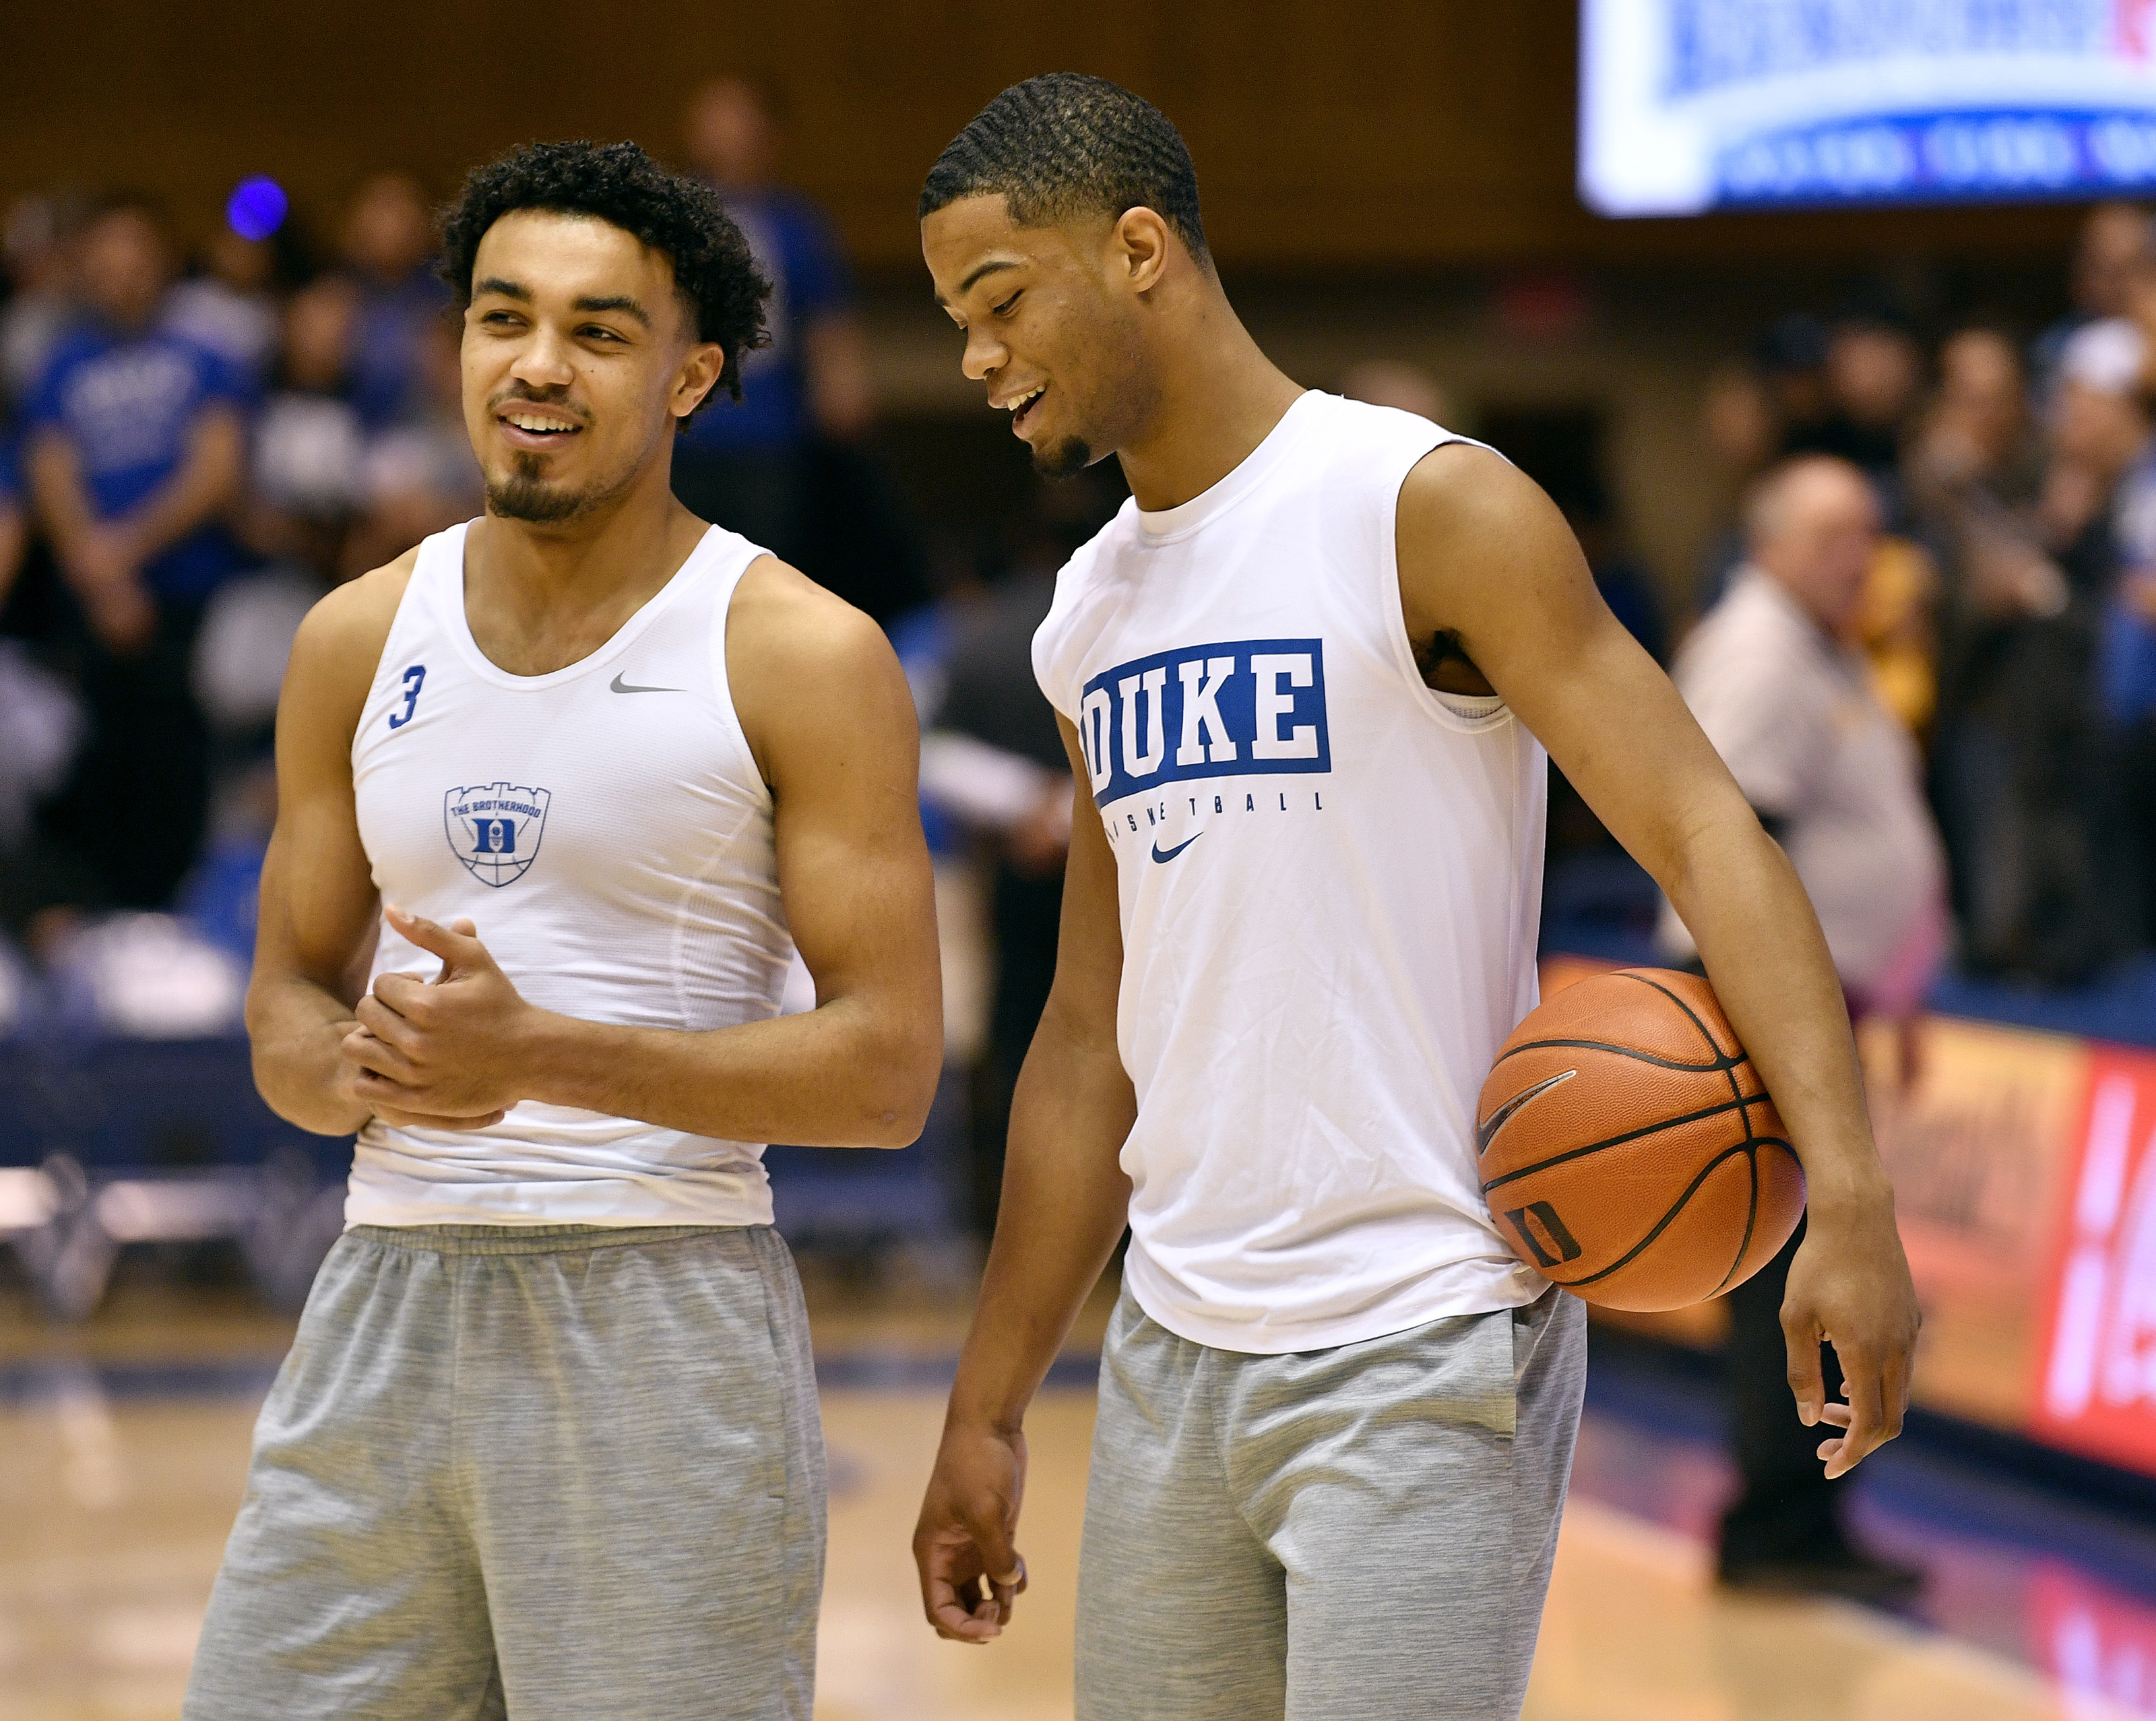 Duke Men's Basketball on X: Another big night for @Tre3Jones